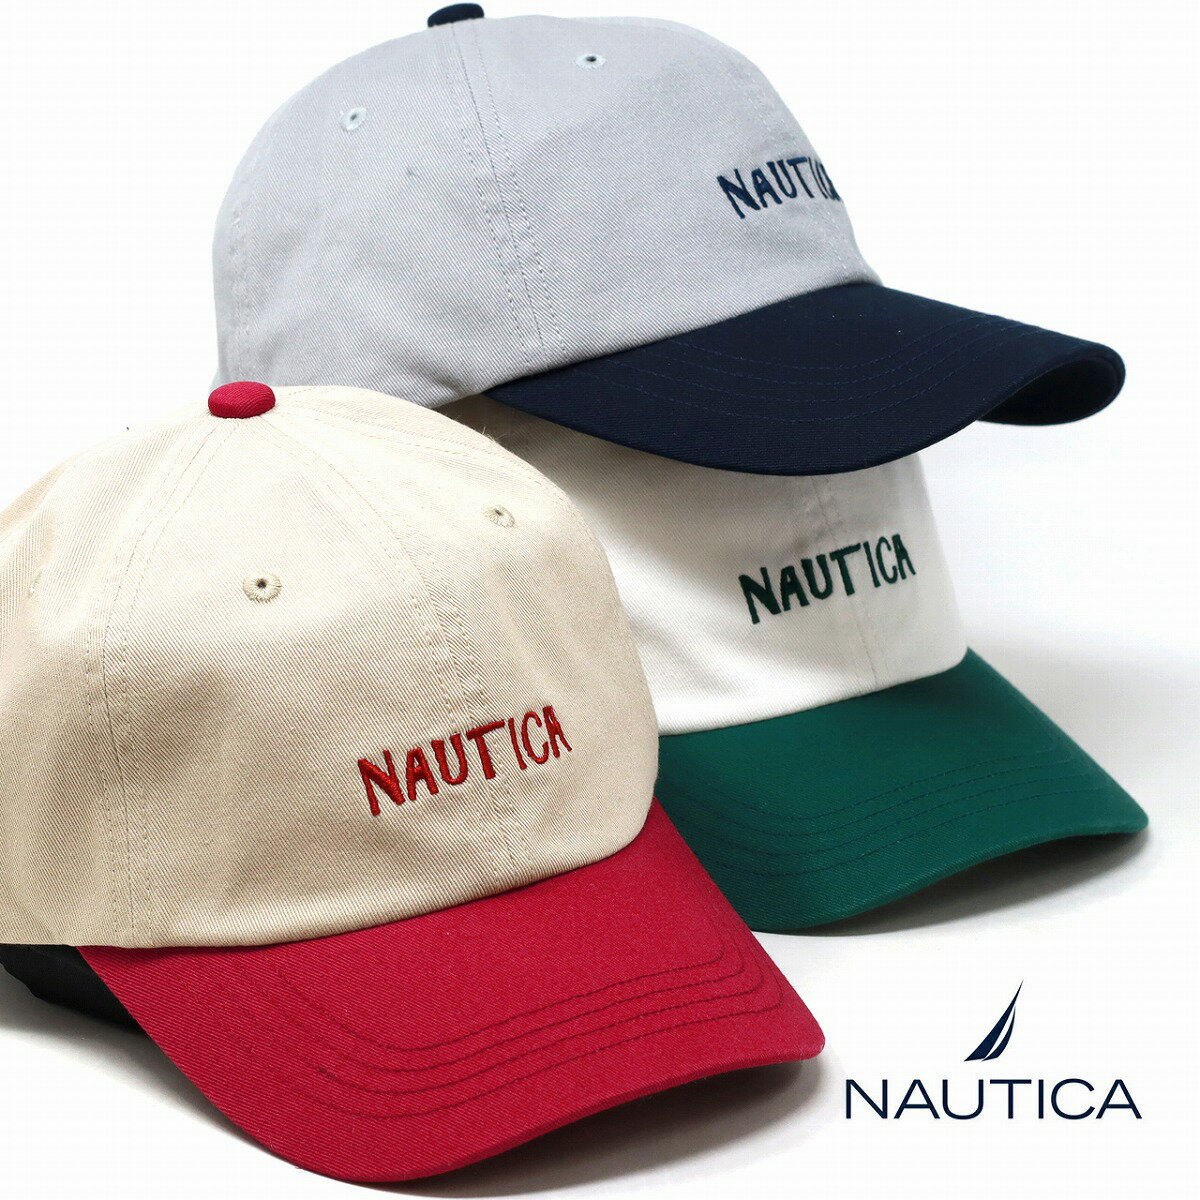 NAUTICA キャップ メンズ ノーティカ 帽子 レディース 2トーン ロゴキャップ レトロ 2TONE 6PANEL CAP ユニセックス 6パネルキャップ フリーサイズ 全3色 ギフト プレゼント 誕生日 ラッピング 包装無料 